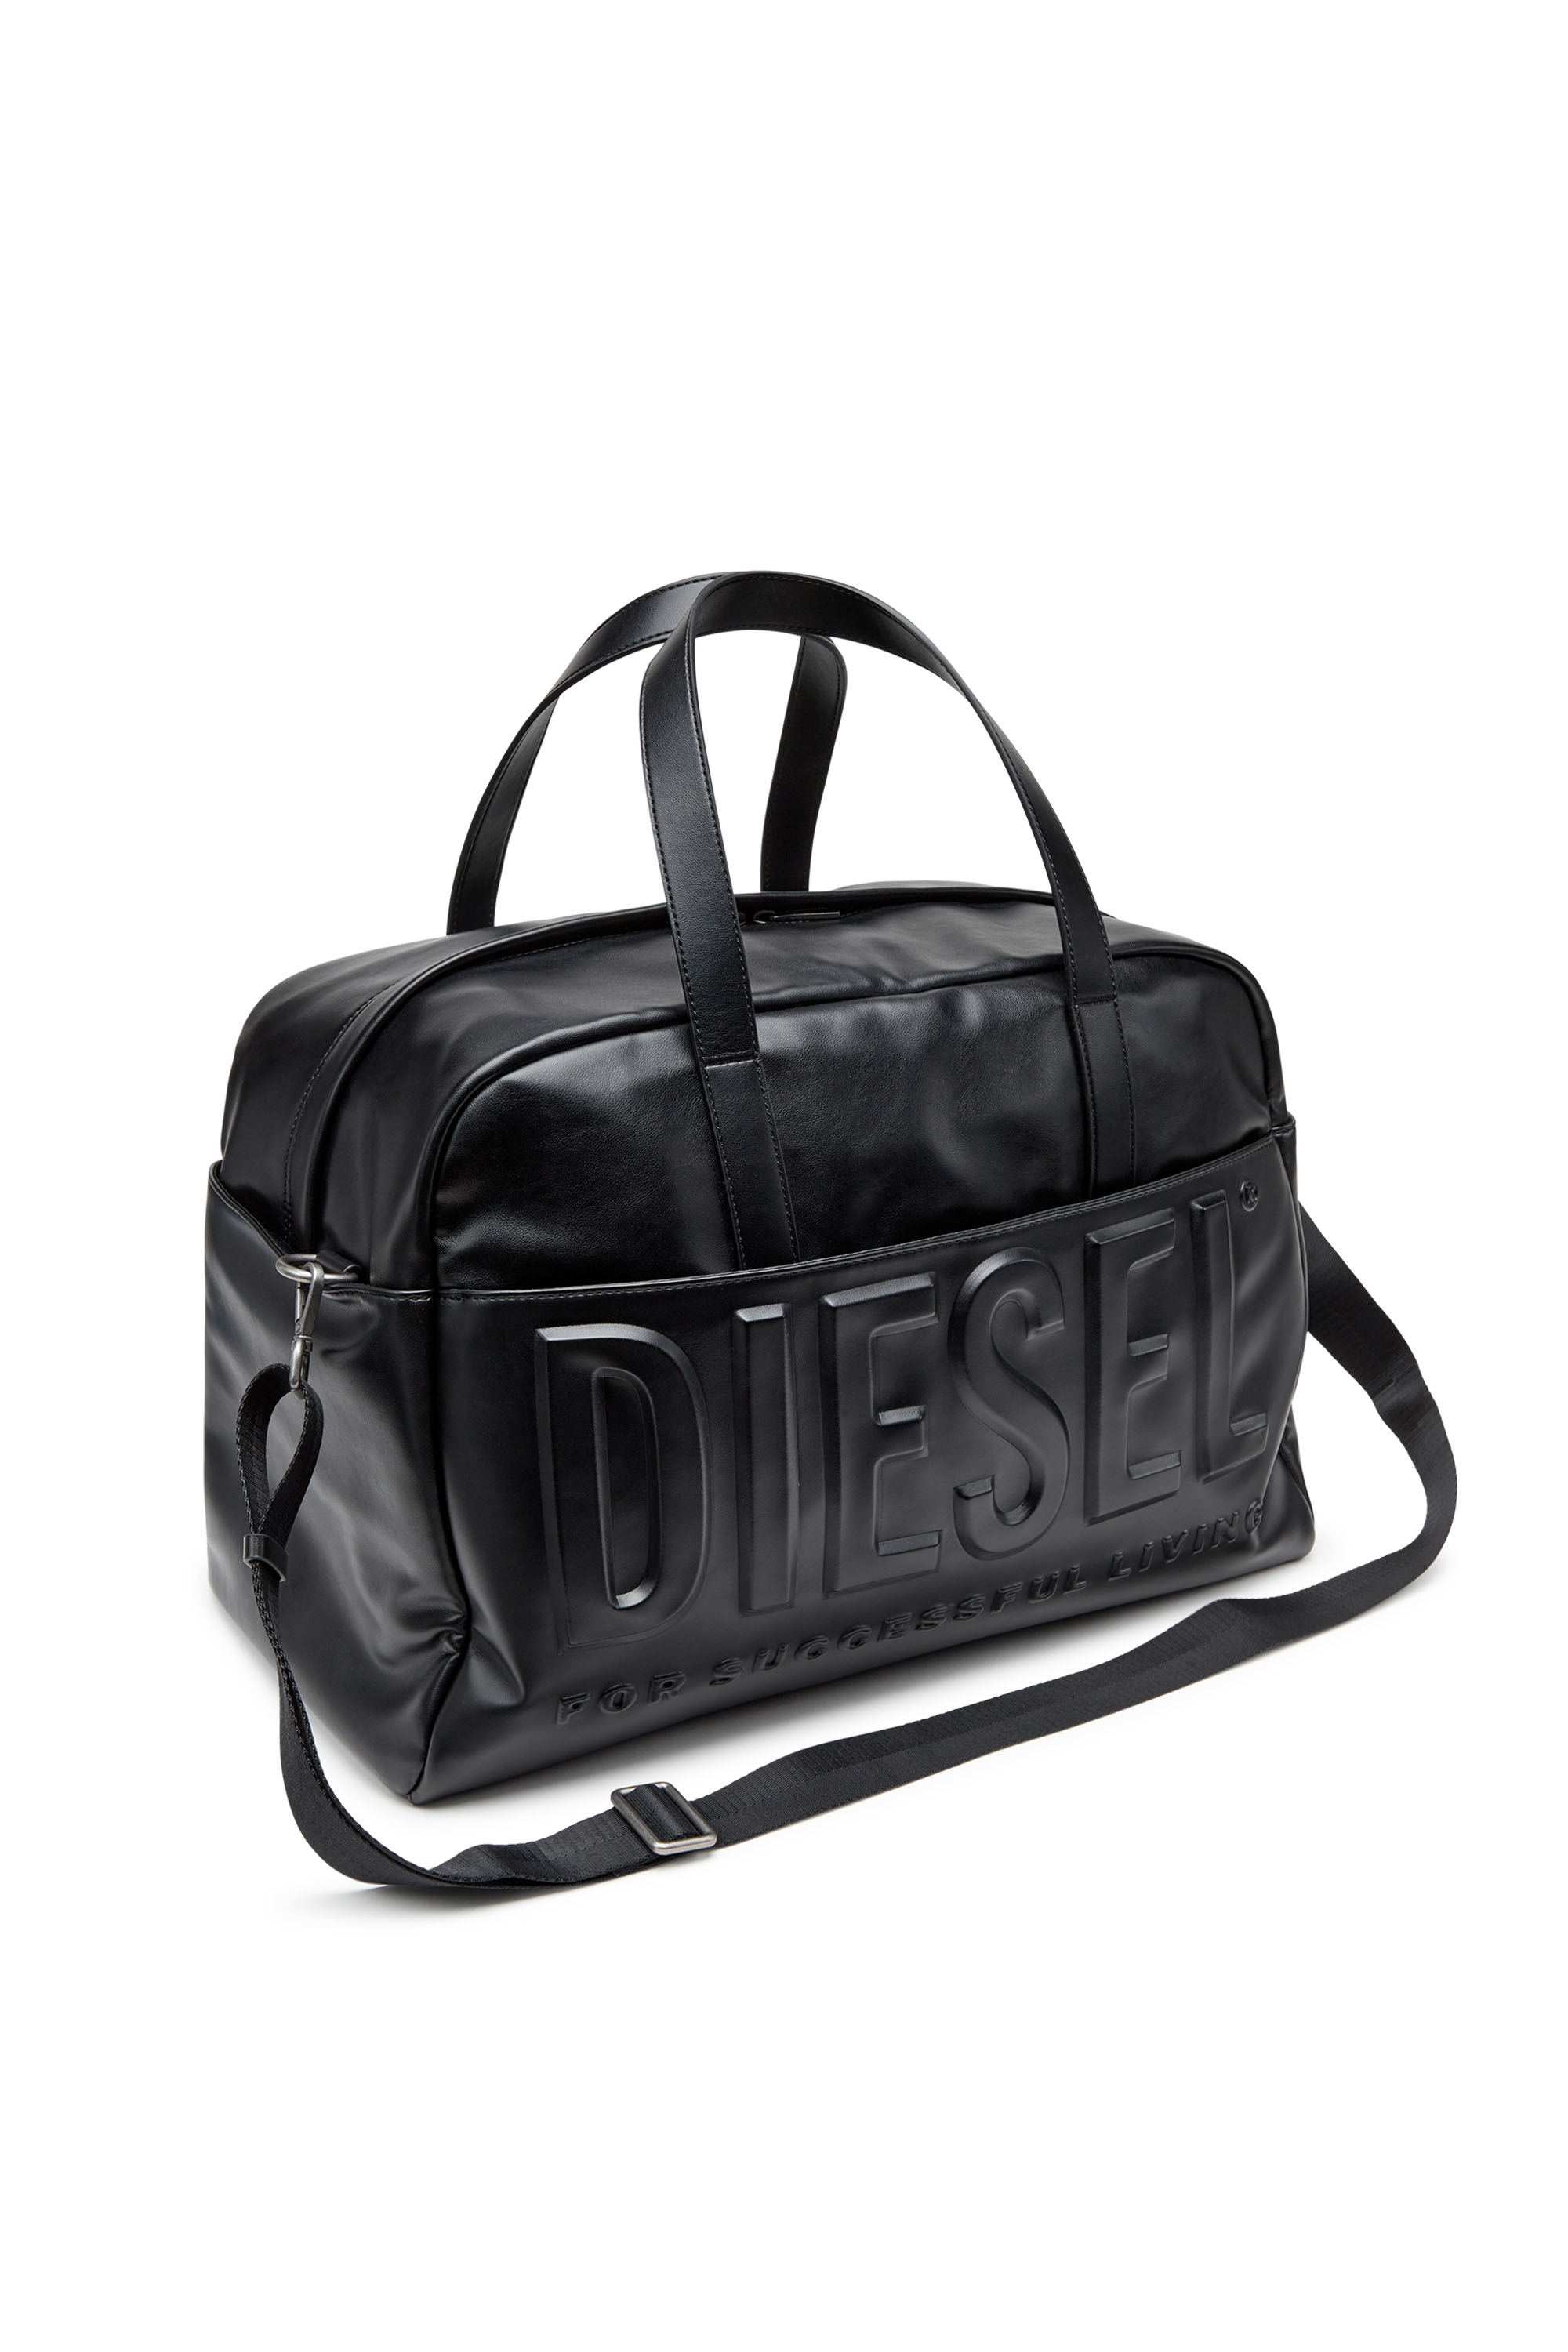 Diesel - DSL 3D DUFFLE L X, Black - Image 5